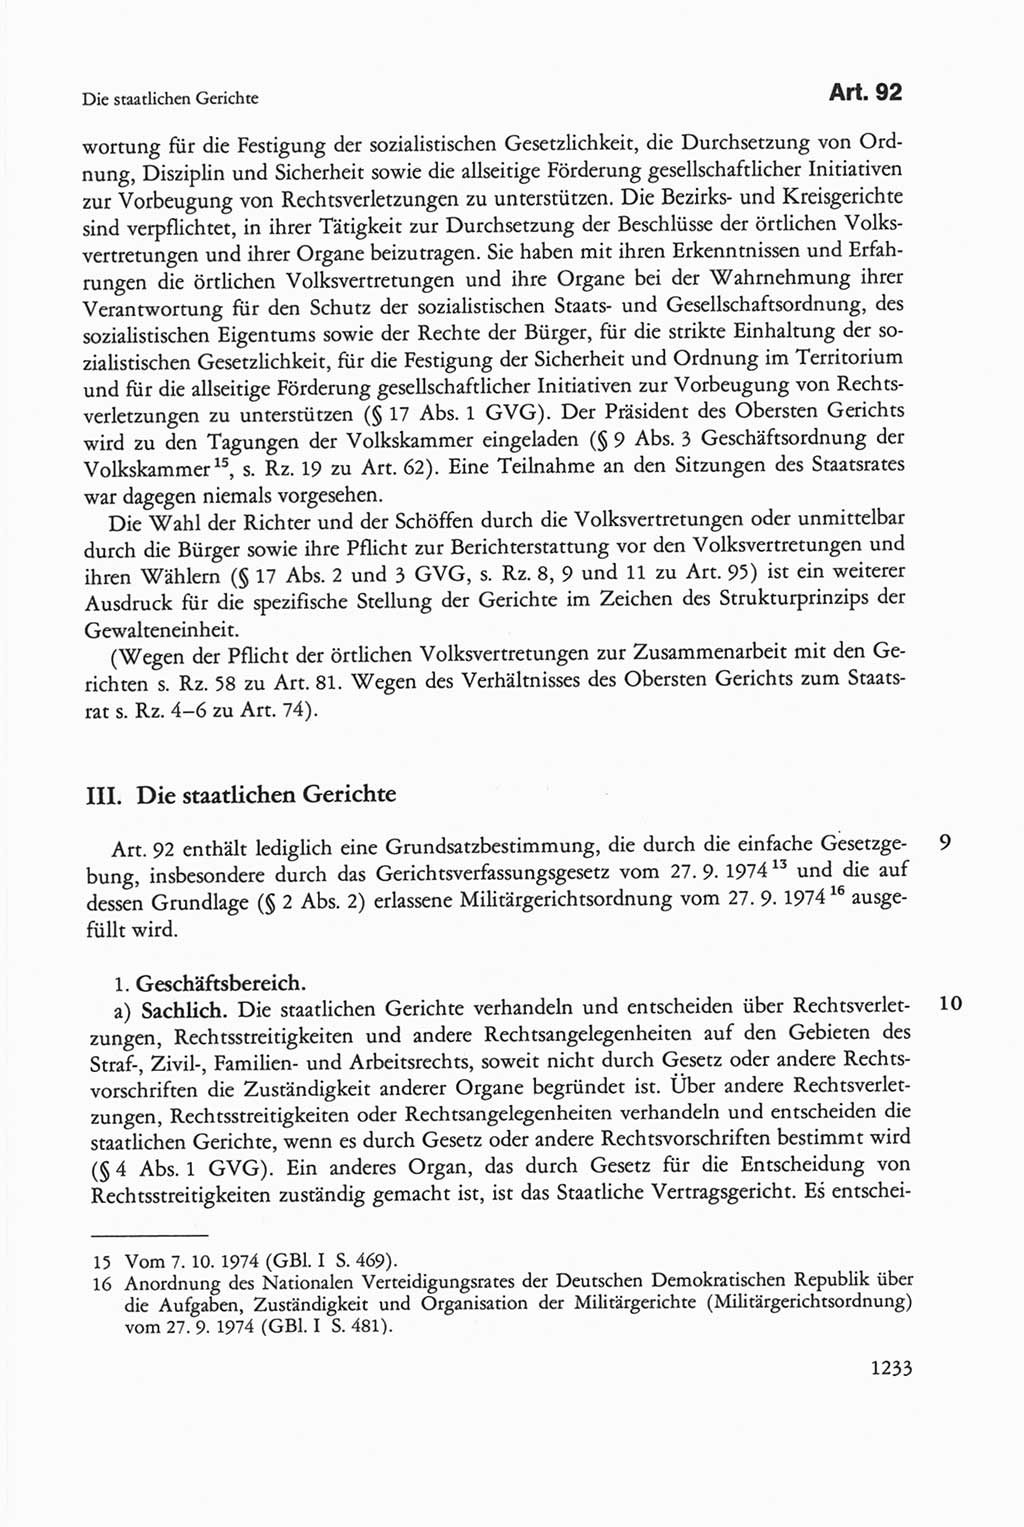 Die sozialistische Verfassung der Deutschen Demokratischen Republik (DDR), Kommentar 1982, Seite 1233 (Soz. Verf. DDR Komm. 1982, S. 1233)